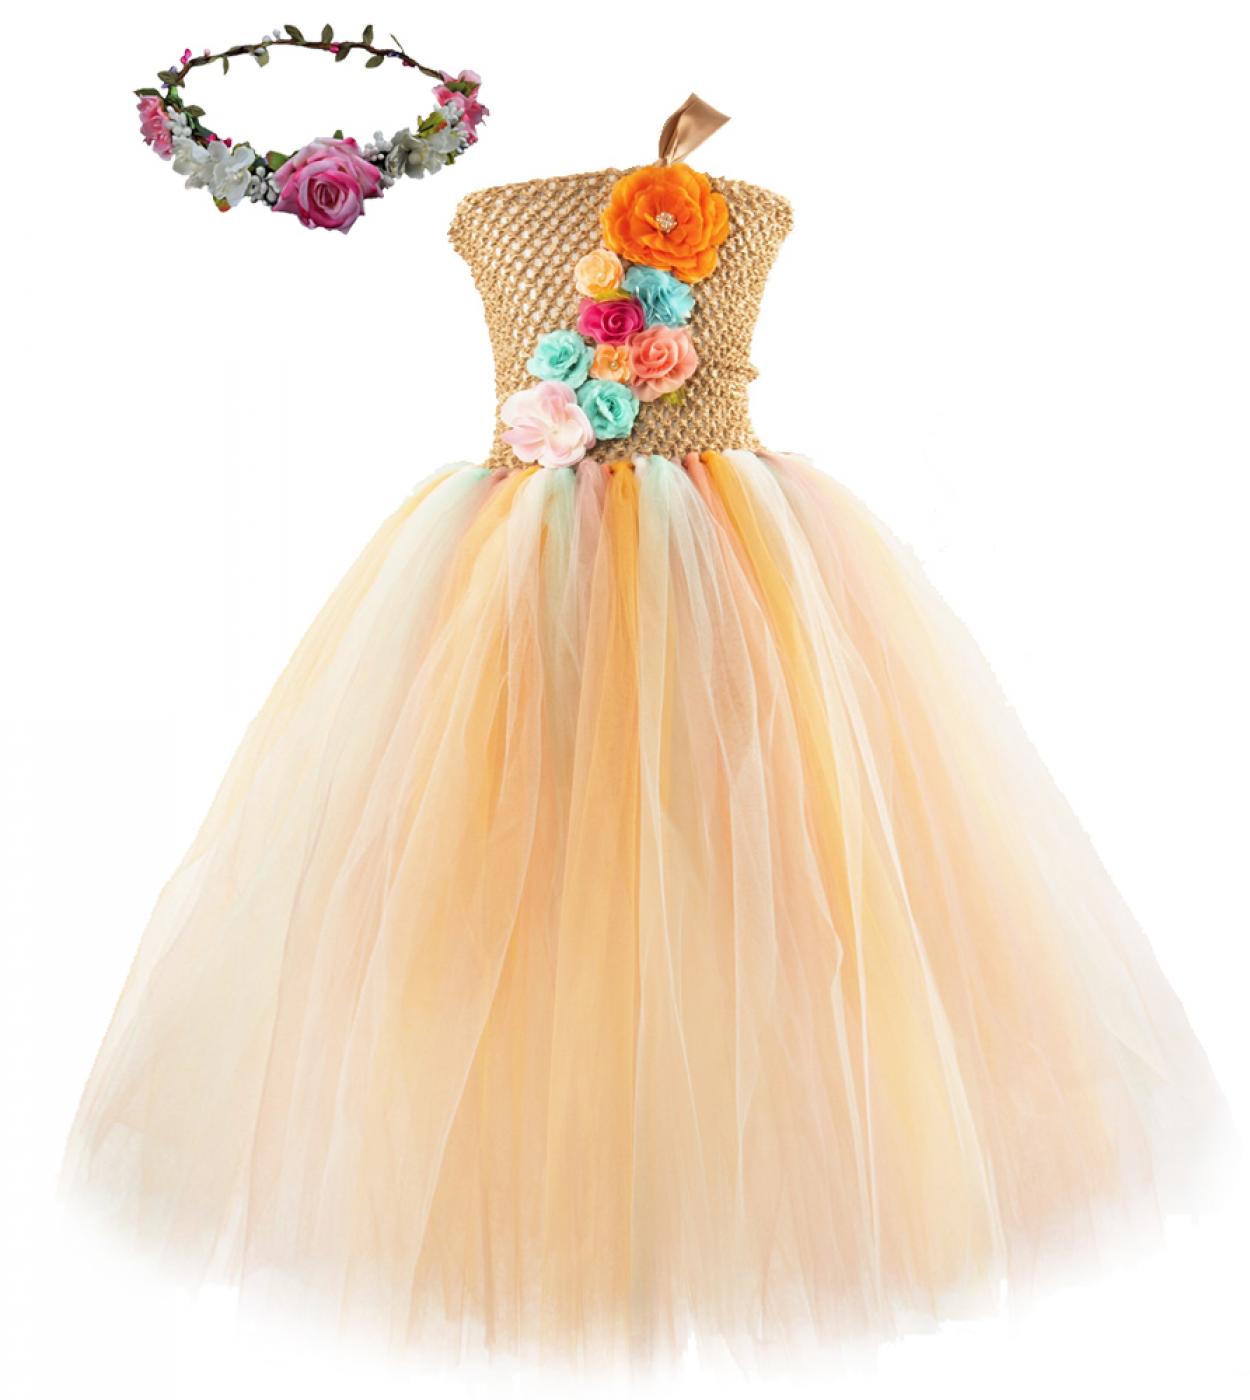 ילדת פרח שמלת טוטו נסיכה ארוכה תחפושות פיות לילדים בנות שמלות טול רצפה עם זר ליום הולדת חתונה